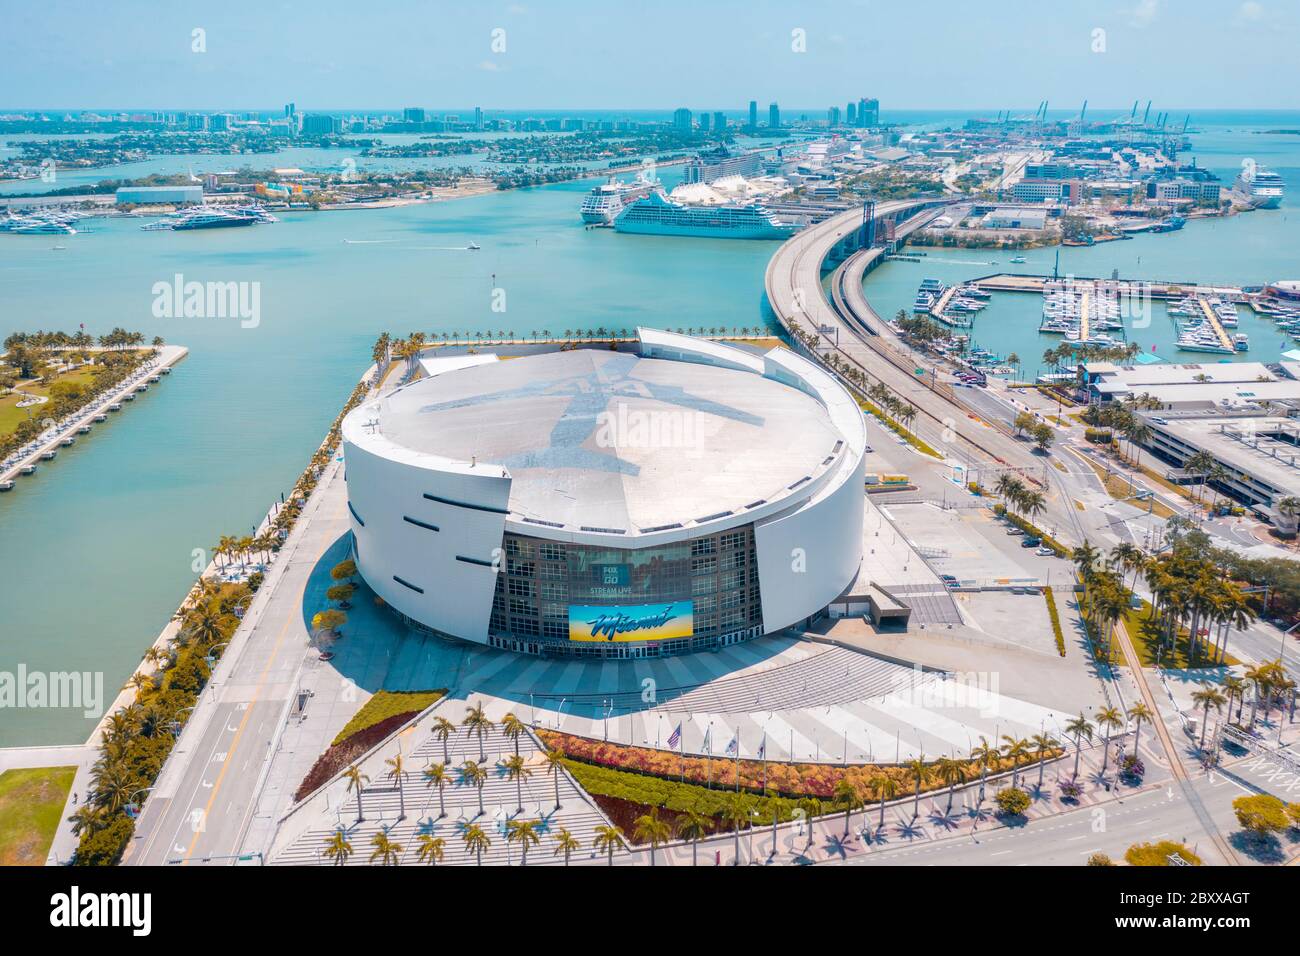 American Airlines Arena - Centre-ville de Miami Banque D'Images